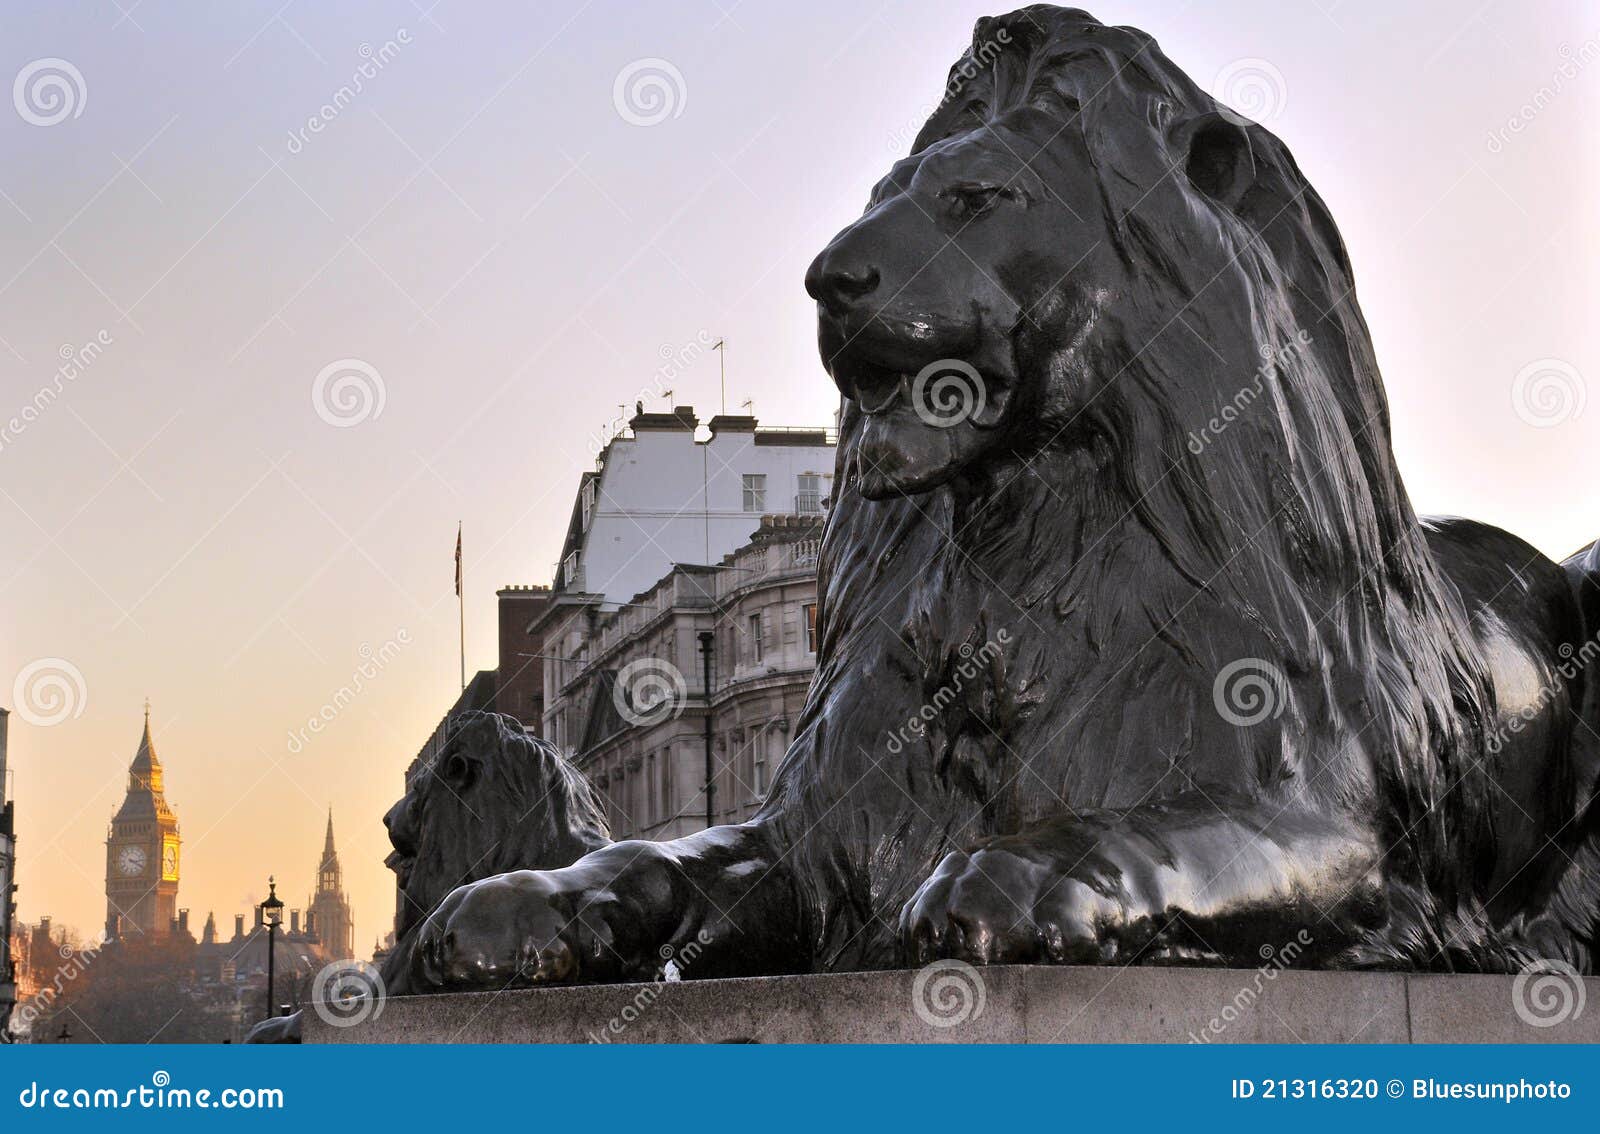 Escultura del león en el cuadrado de Trafalgar, Londres, Inglaterra. Con Ben grande en el fondo.